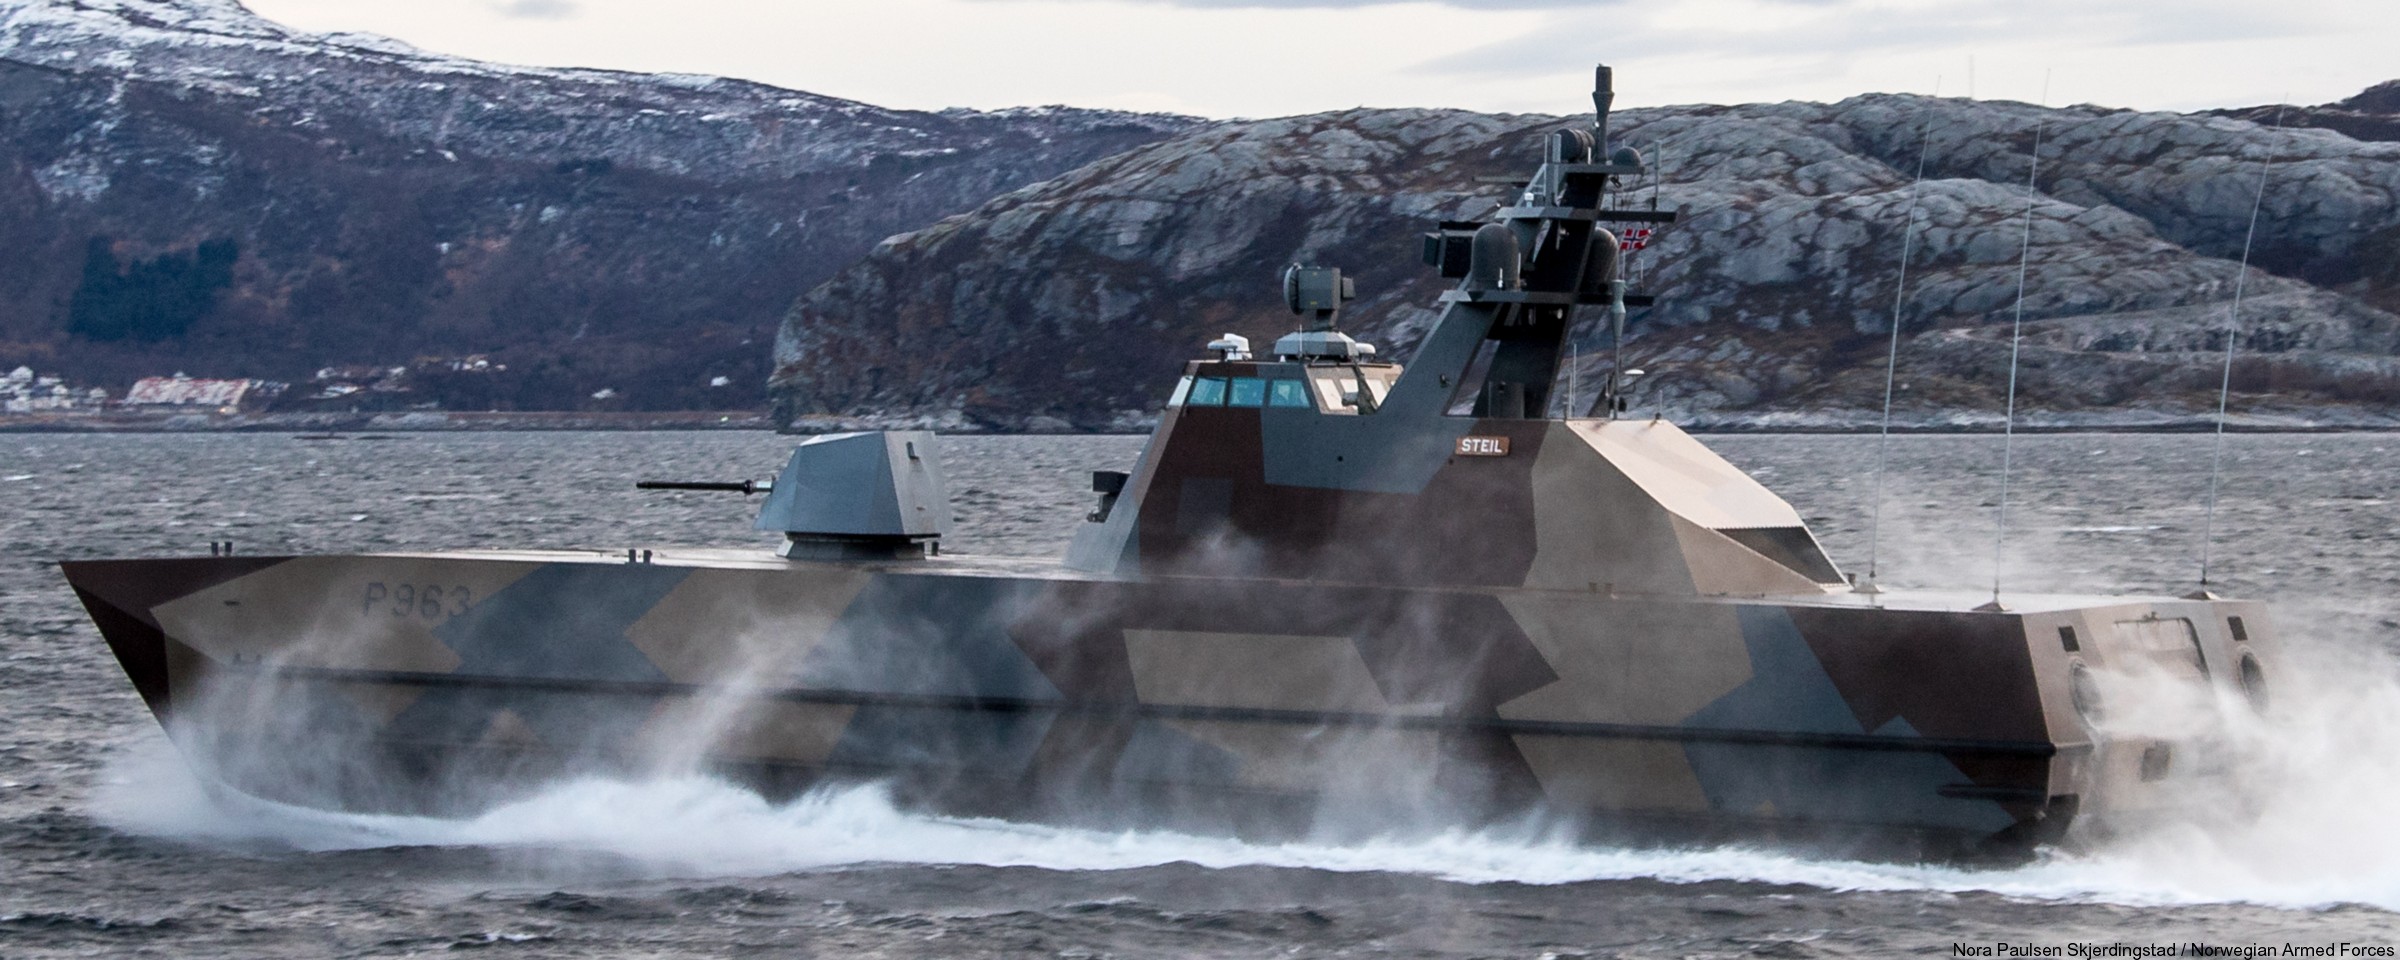 p-963 steil knm hnoms skjold class corvette royal norwegian navy sjoforsvaret 10